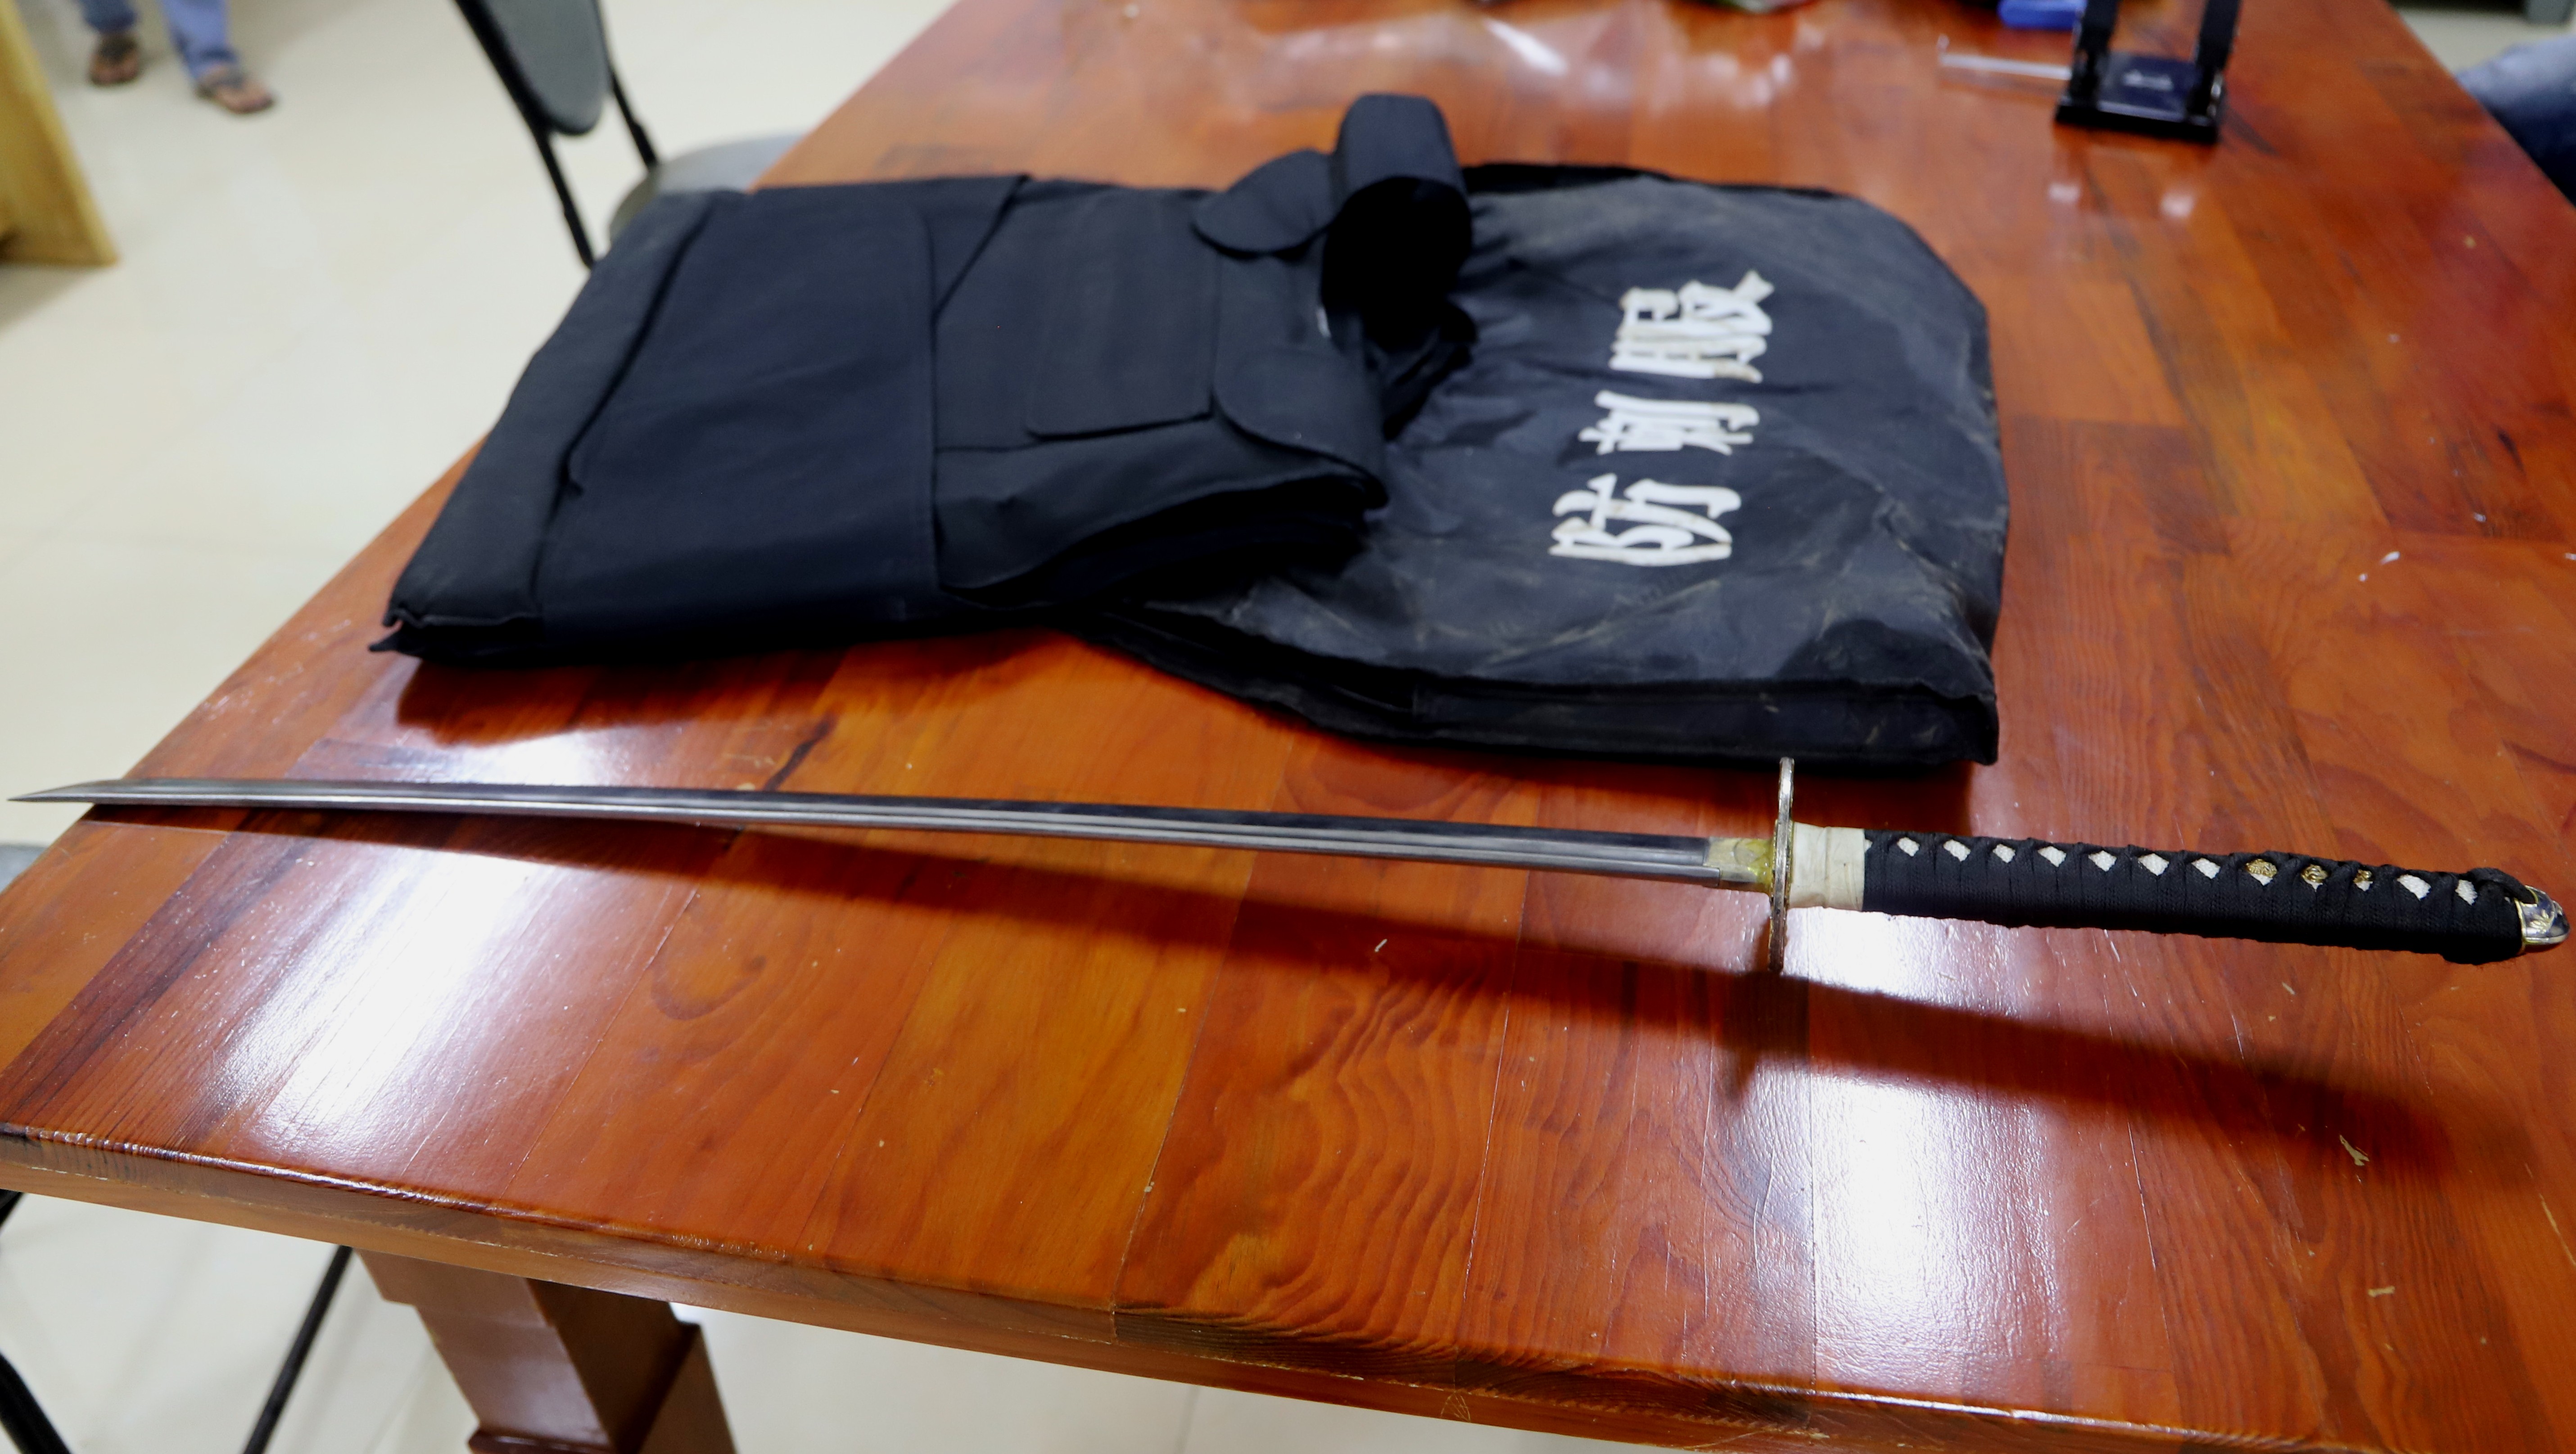 Mật phục bắt đối tượng tàng trữ ma túy, phát hiện cả lựu đạn, kiếm Nhật và áo giáp